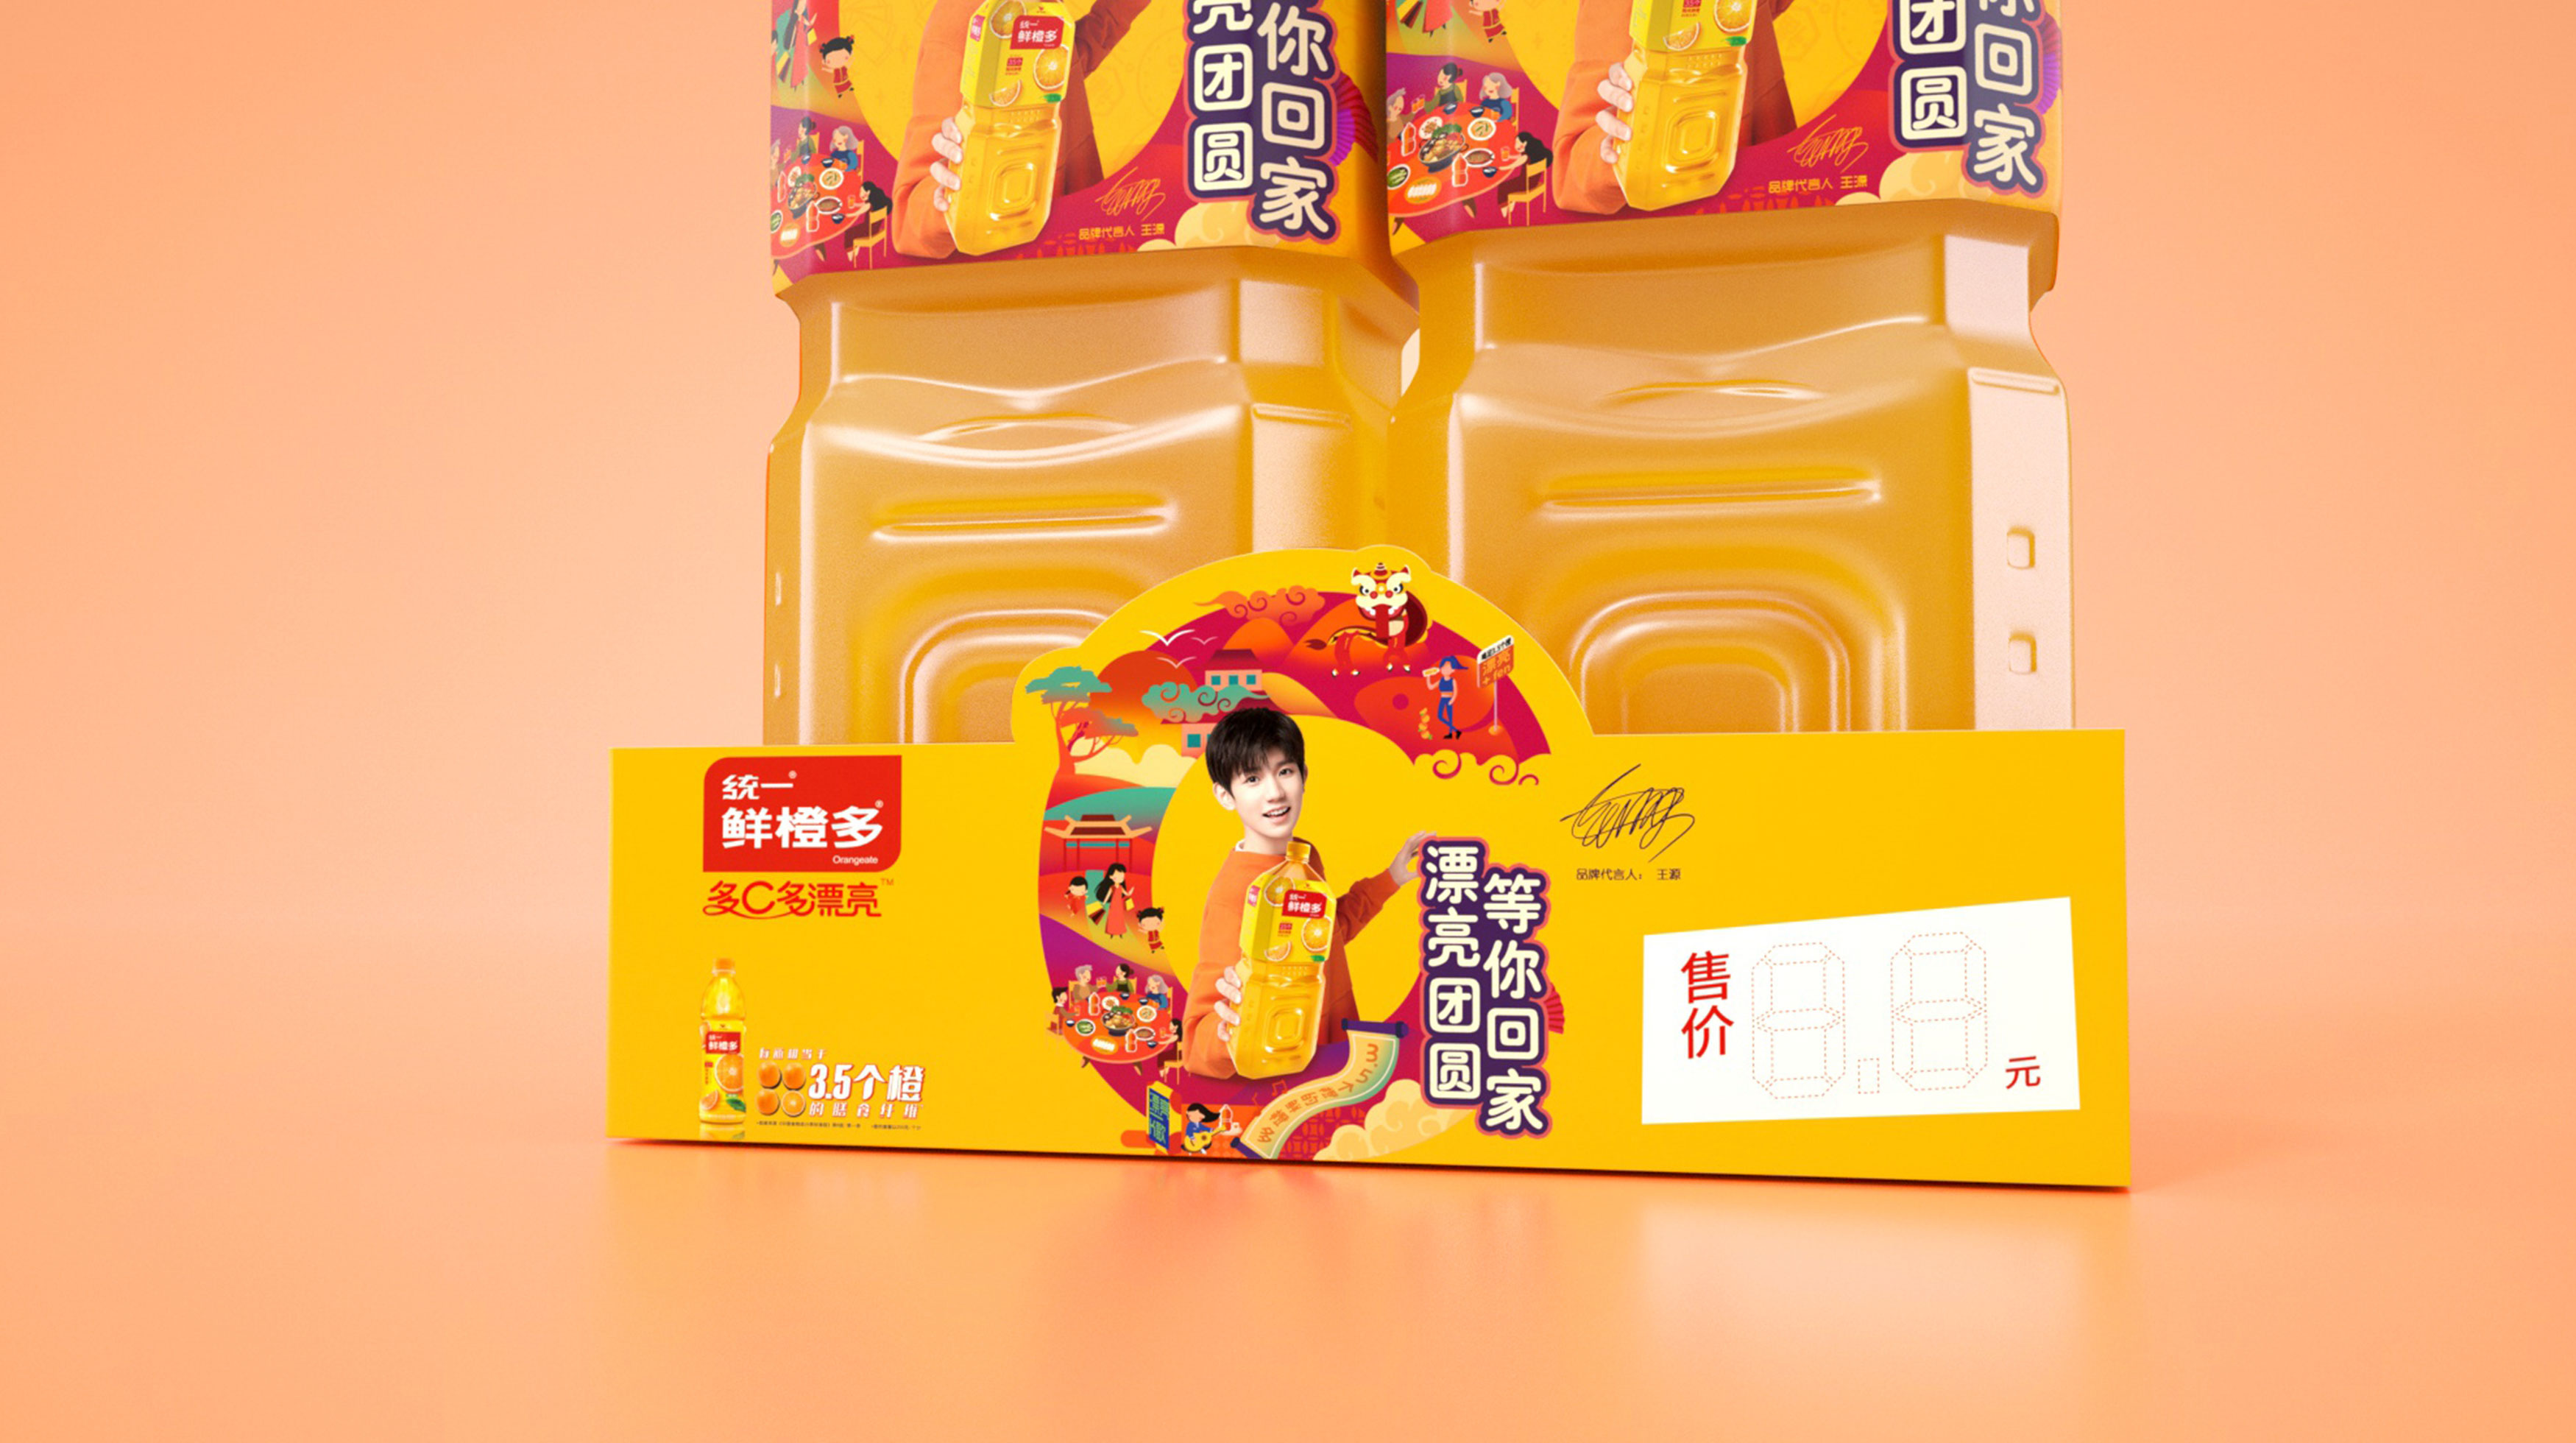 统一鲜橙多CNY系列包装设计 - 饮料作品赏析 - 红动论坛 - 知名设计作品交流平台